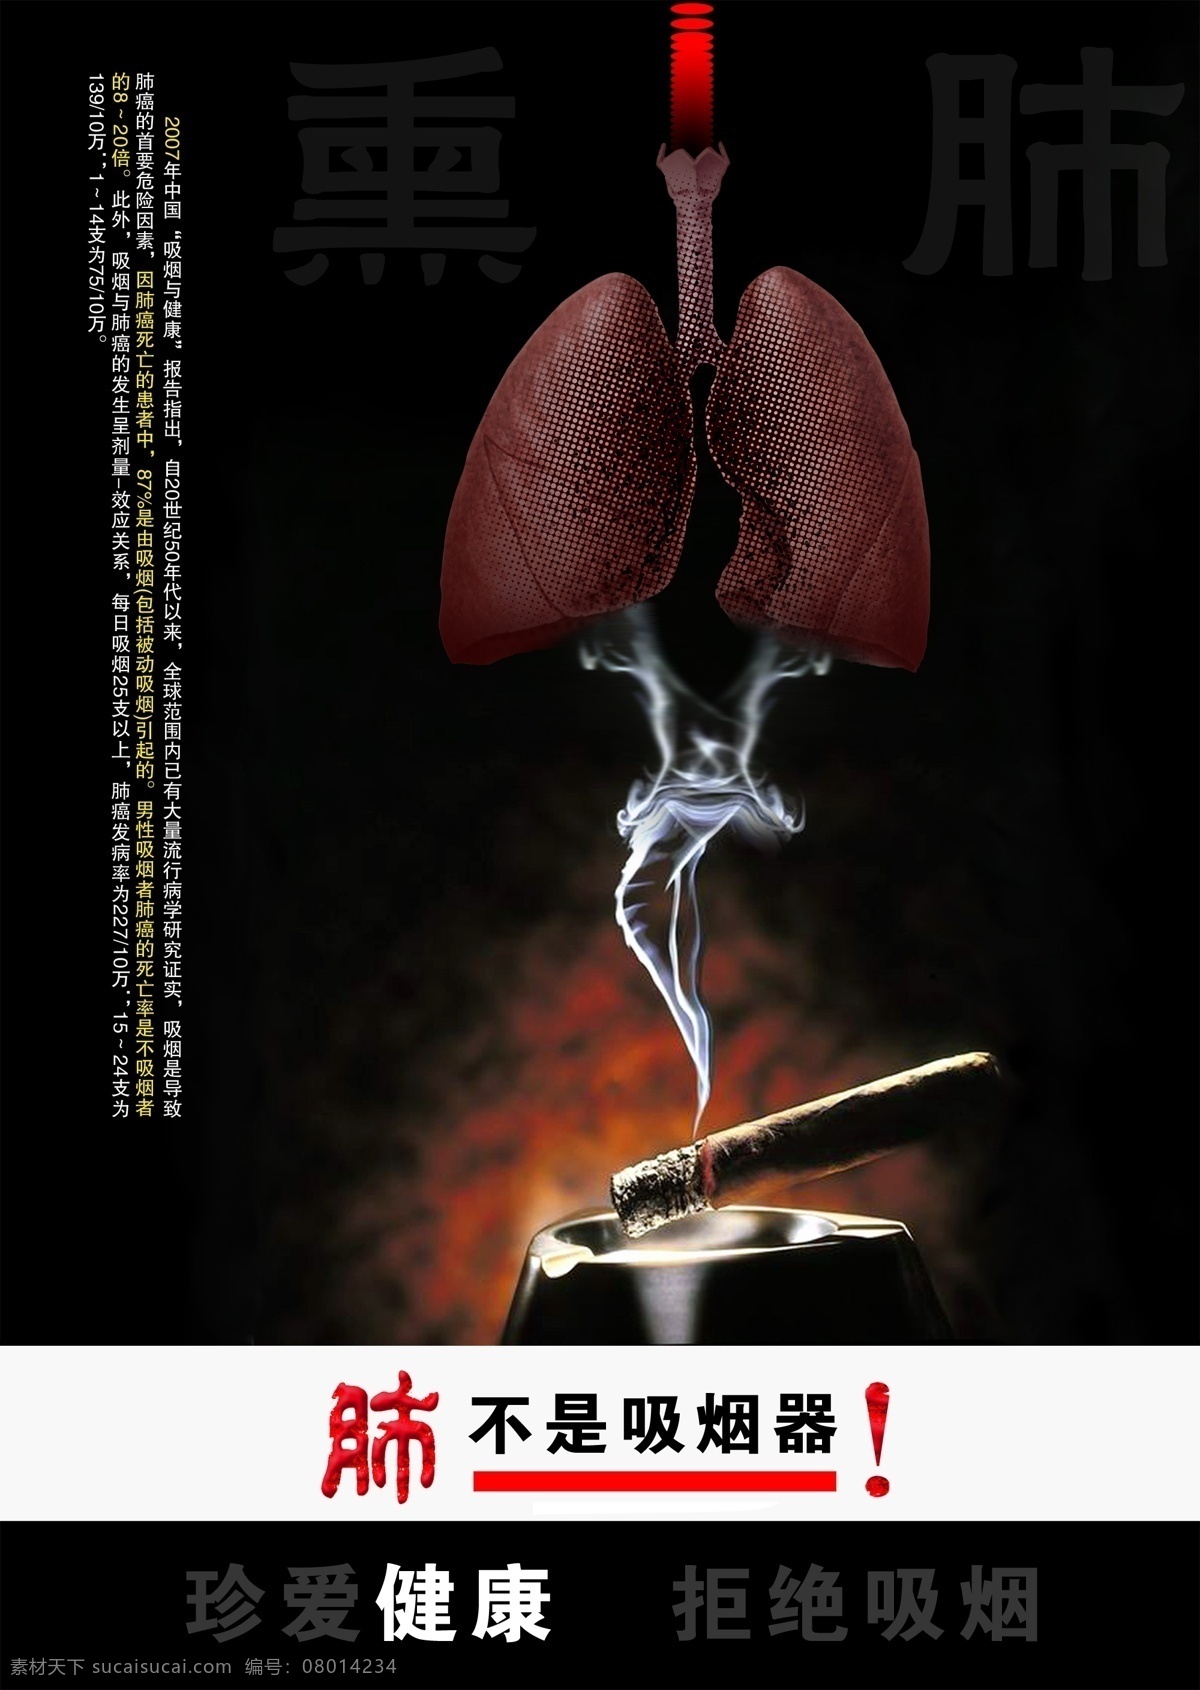 分层 肺 公益广告 戒烟公益广告 源文件库 戒烟 公益 广告 模板下载 燃着的烟头 展板 公益展板设计